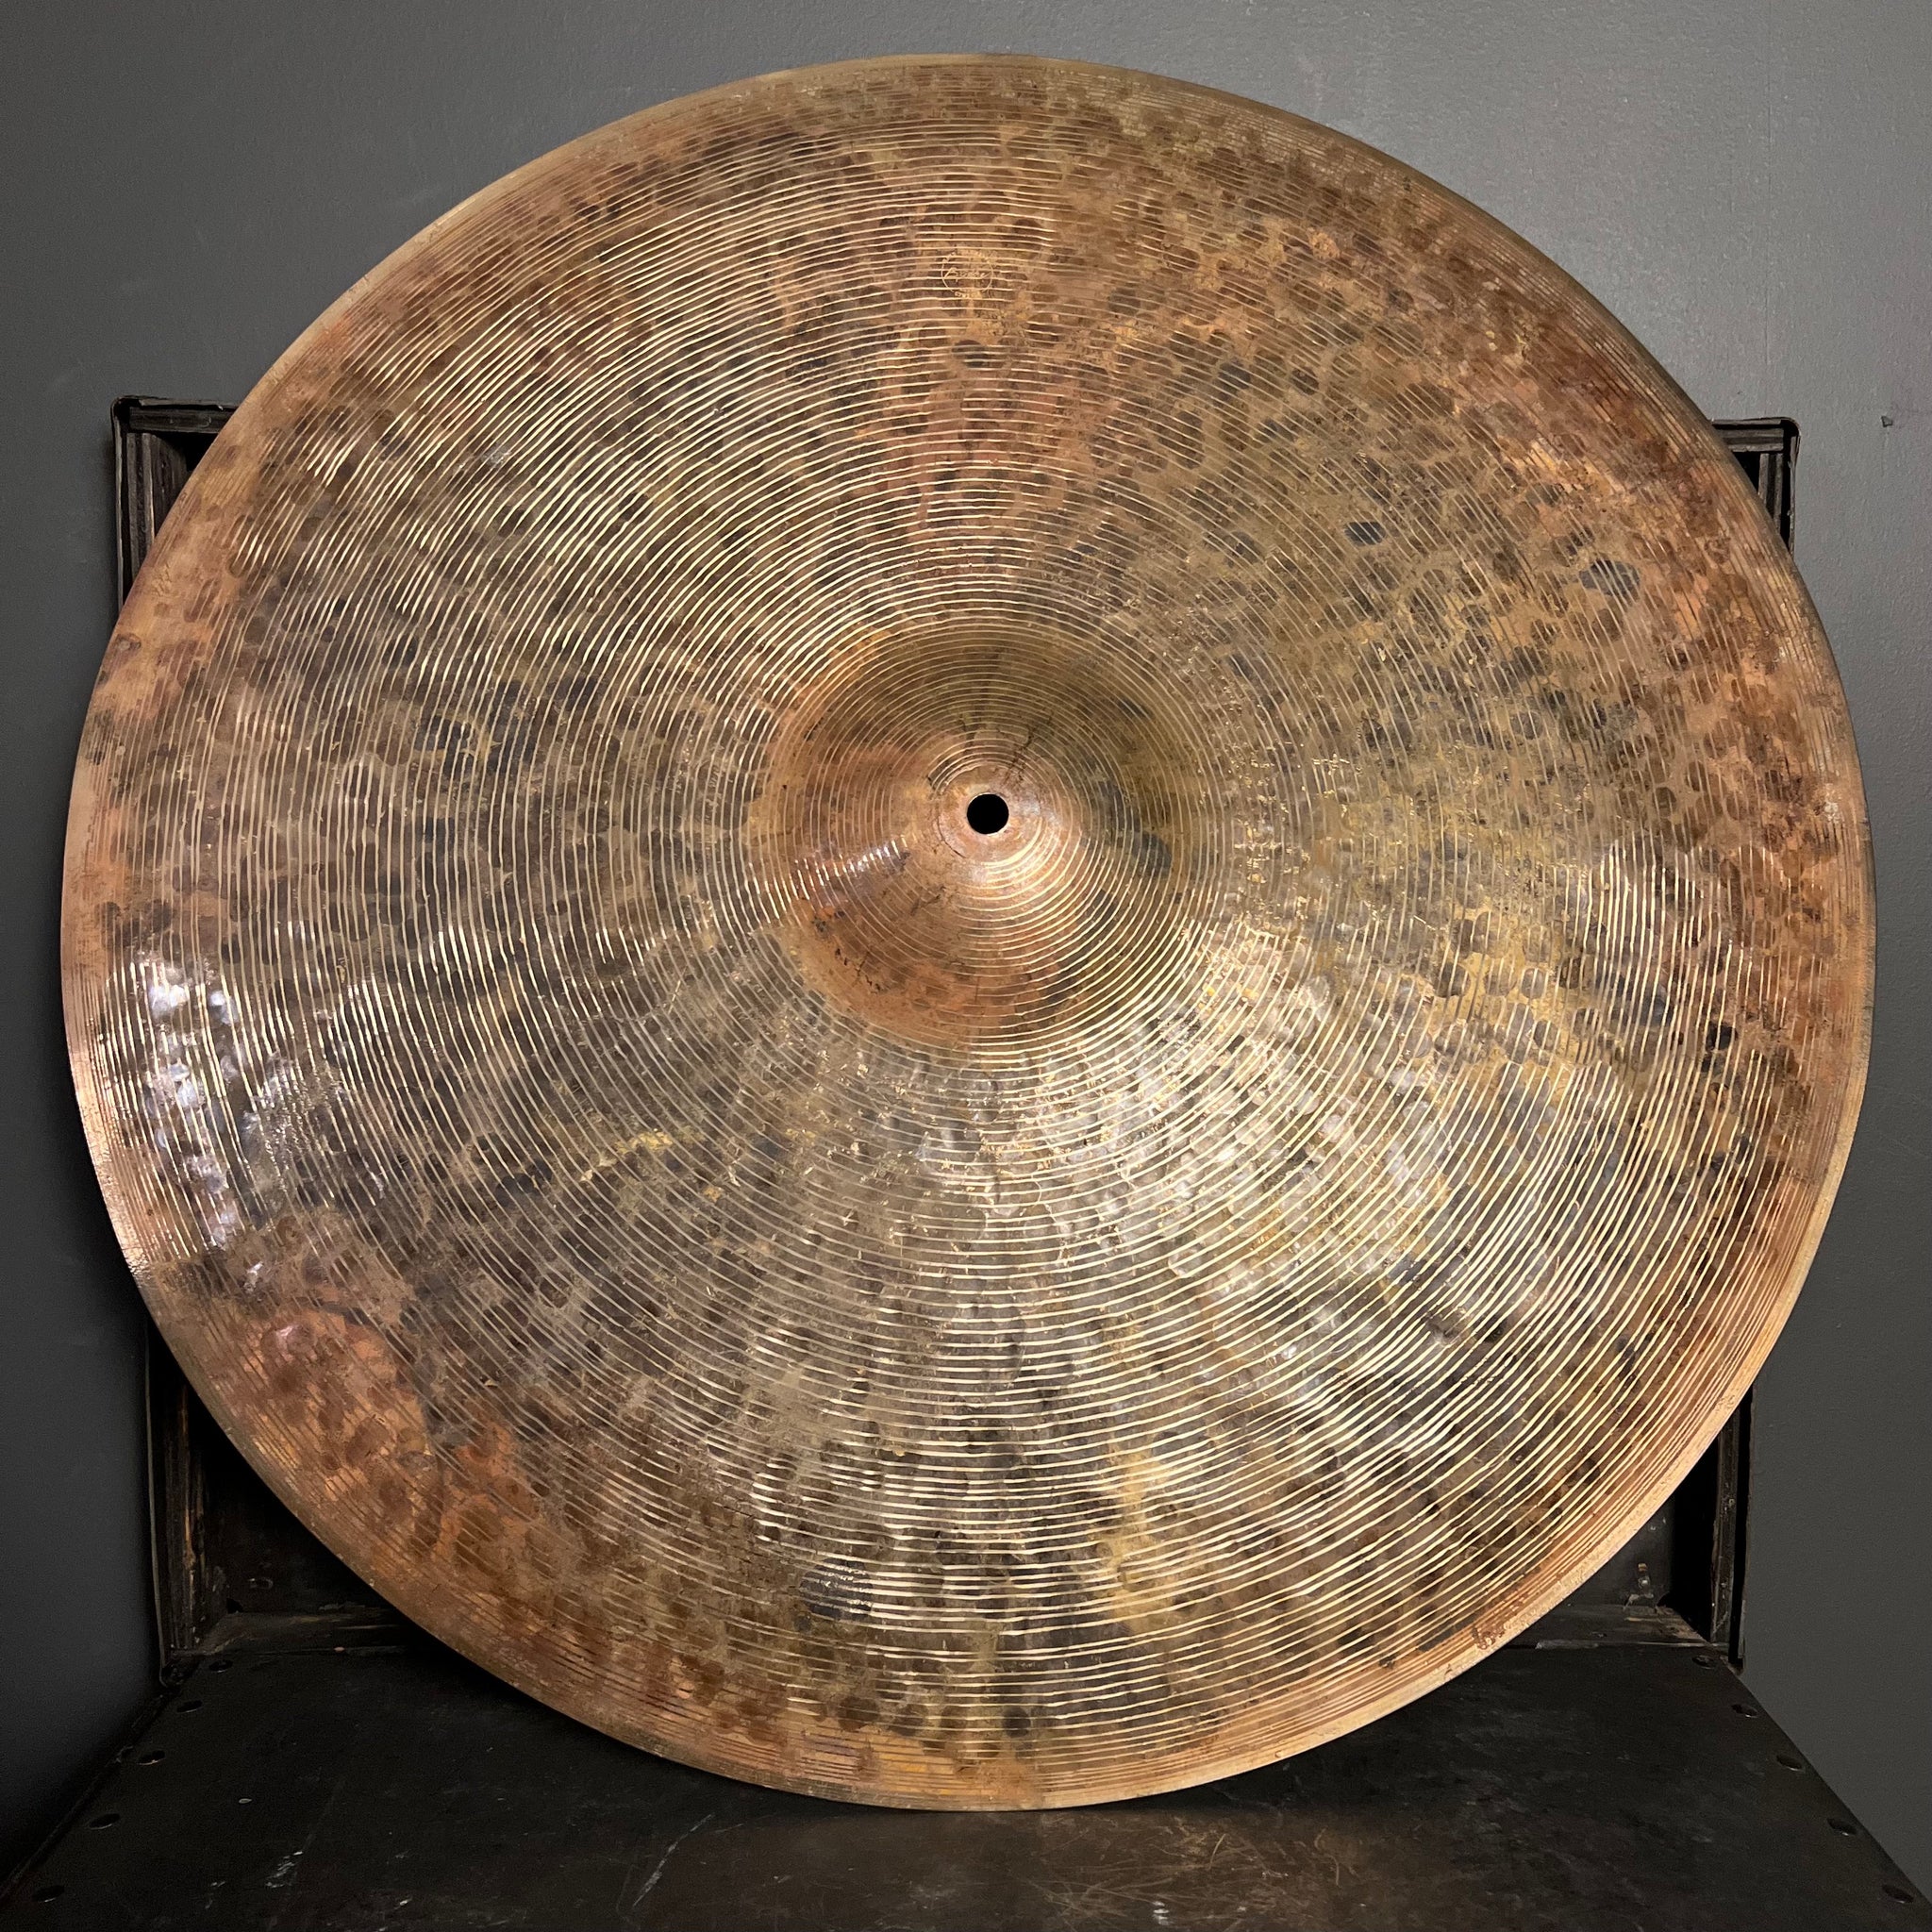 NEW Byrne 22" Quarter Turk Ride Cymbal w/ Three Hammer Pockets - 2506g